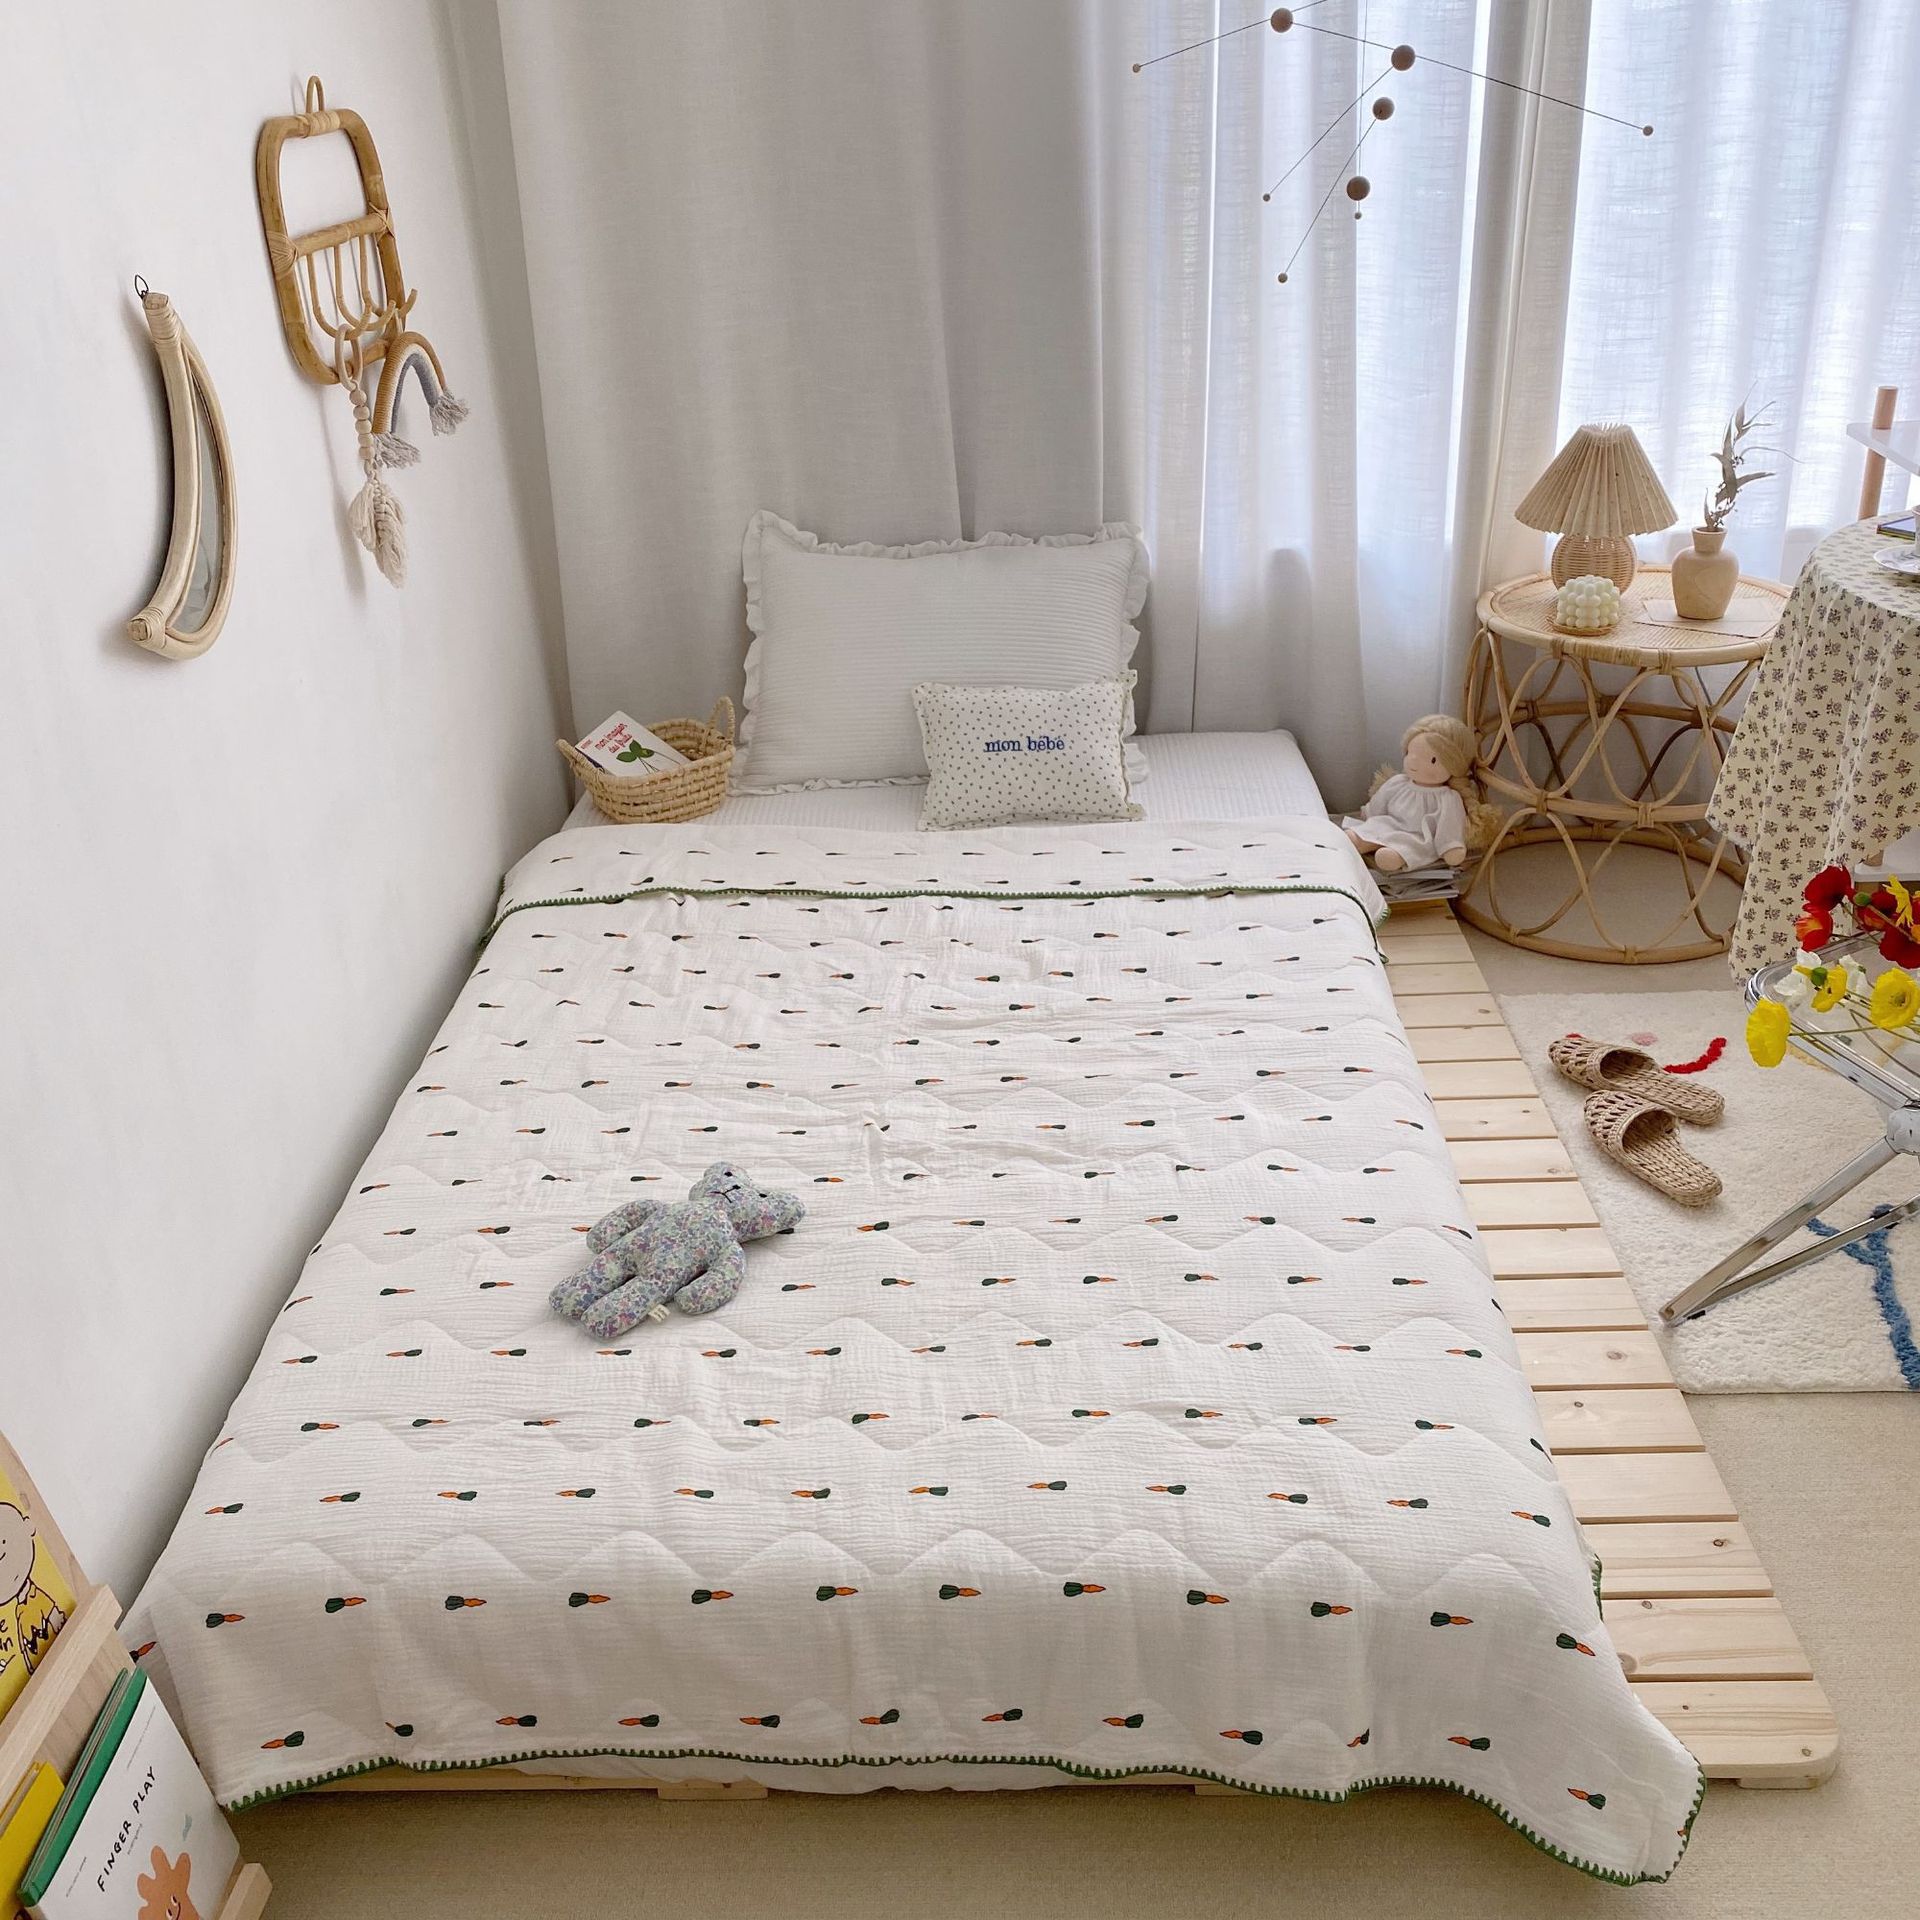 95*115cm sommerdyner til børn 100%  luftgennemtrængelighedstæpper i bomuld til hjemmet børnehave skolebørn sengetøj: Gulerod